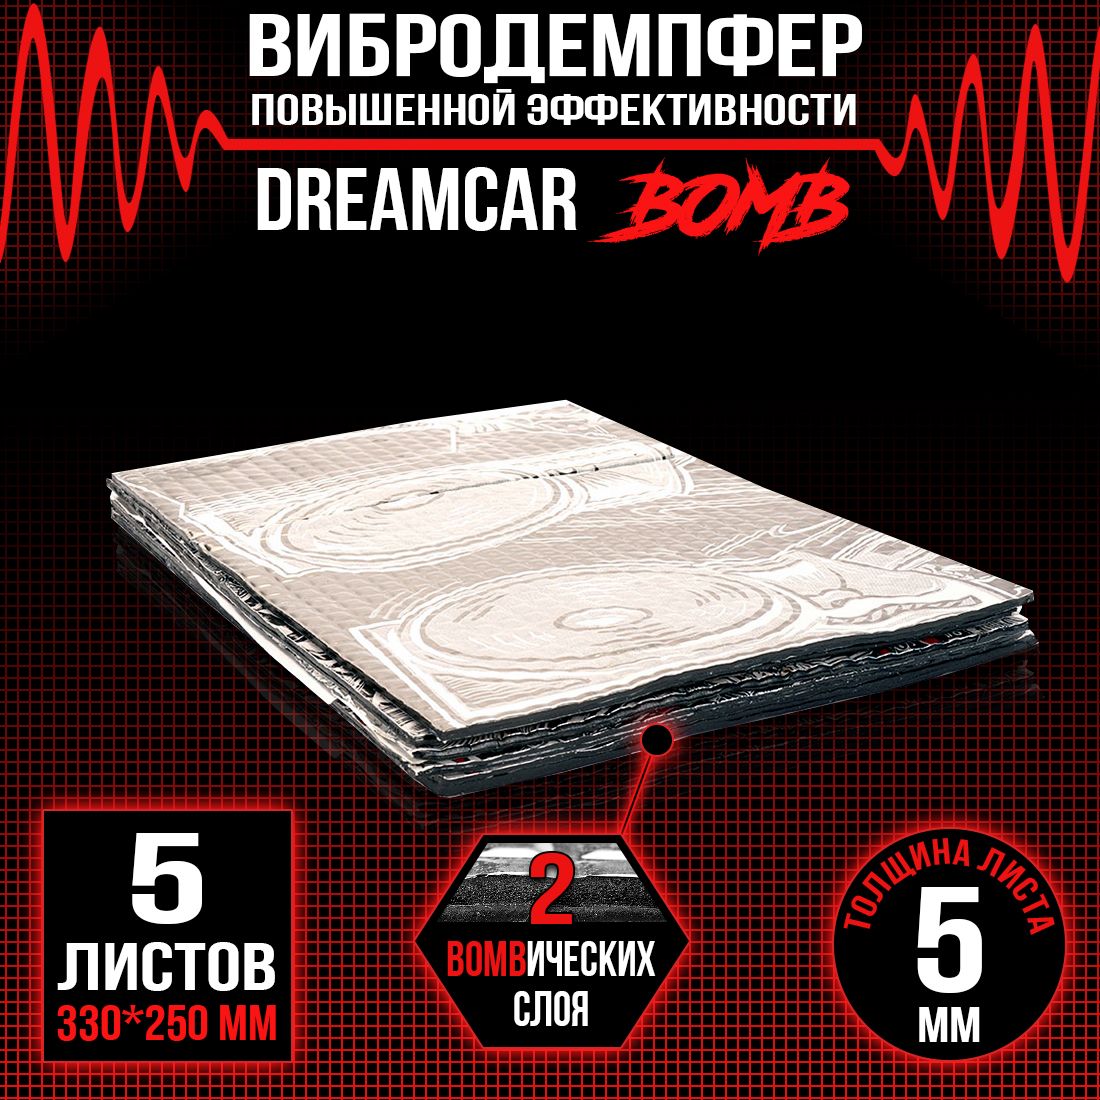 5 листов - Виброизоляция повышенного вибропоглощения c двойным слоем DreamCar Bomb 5мм 33х25см - 5 листов